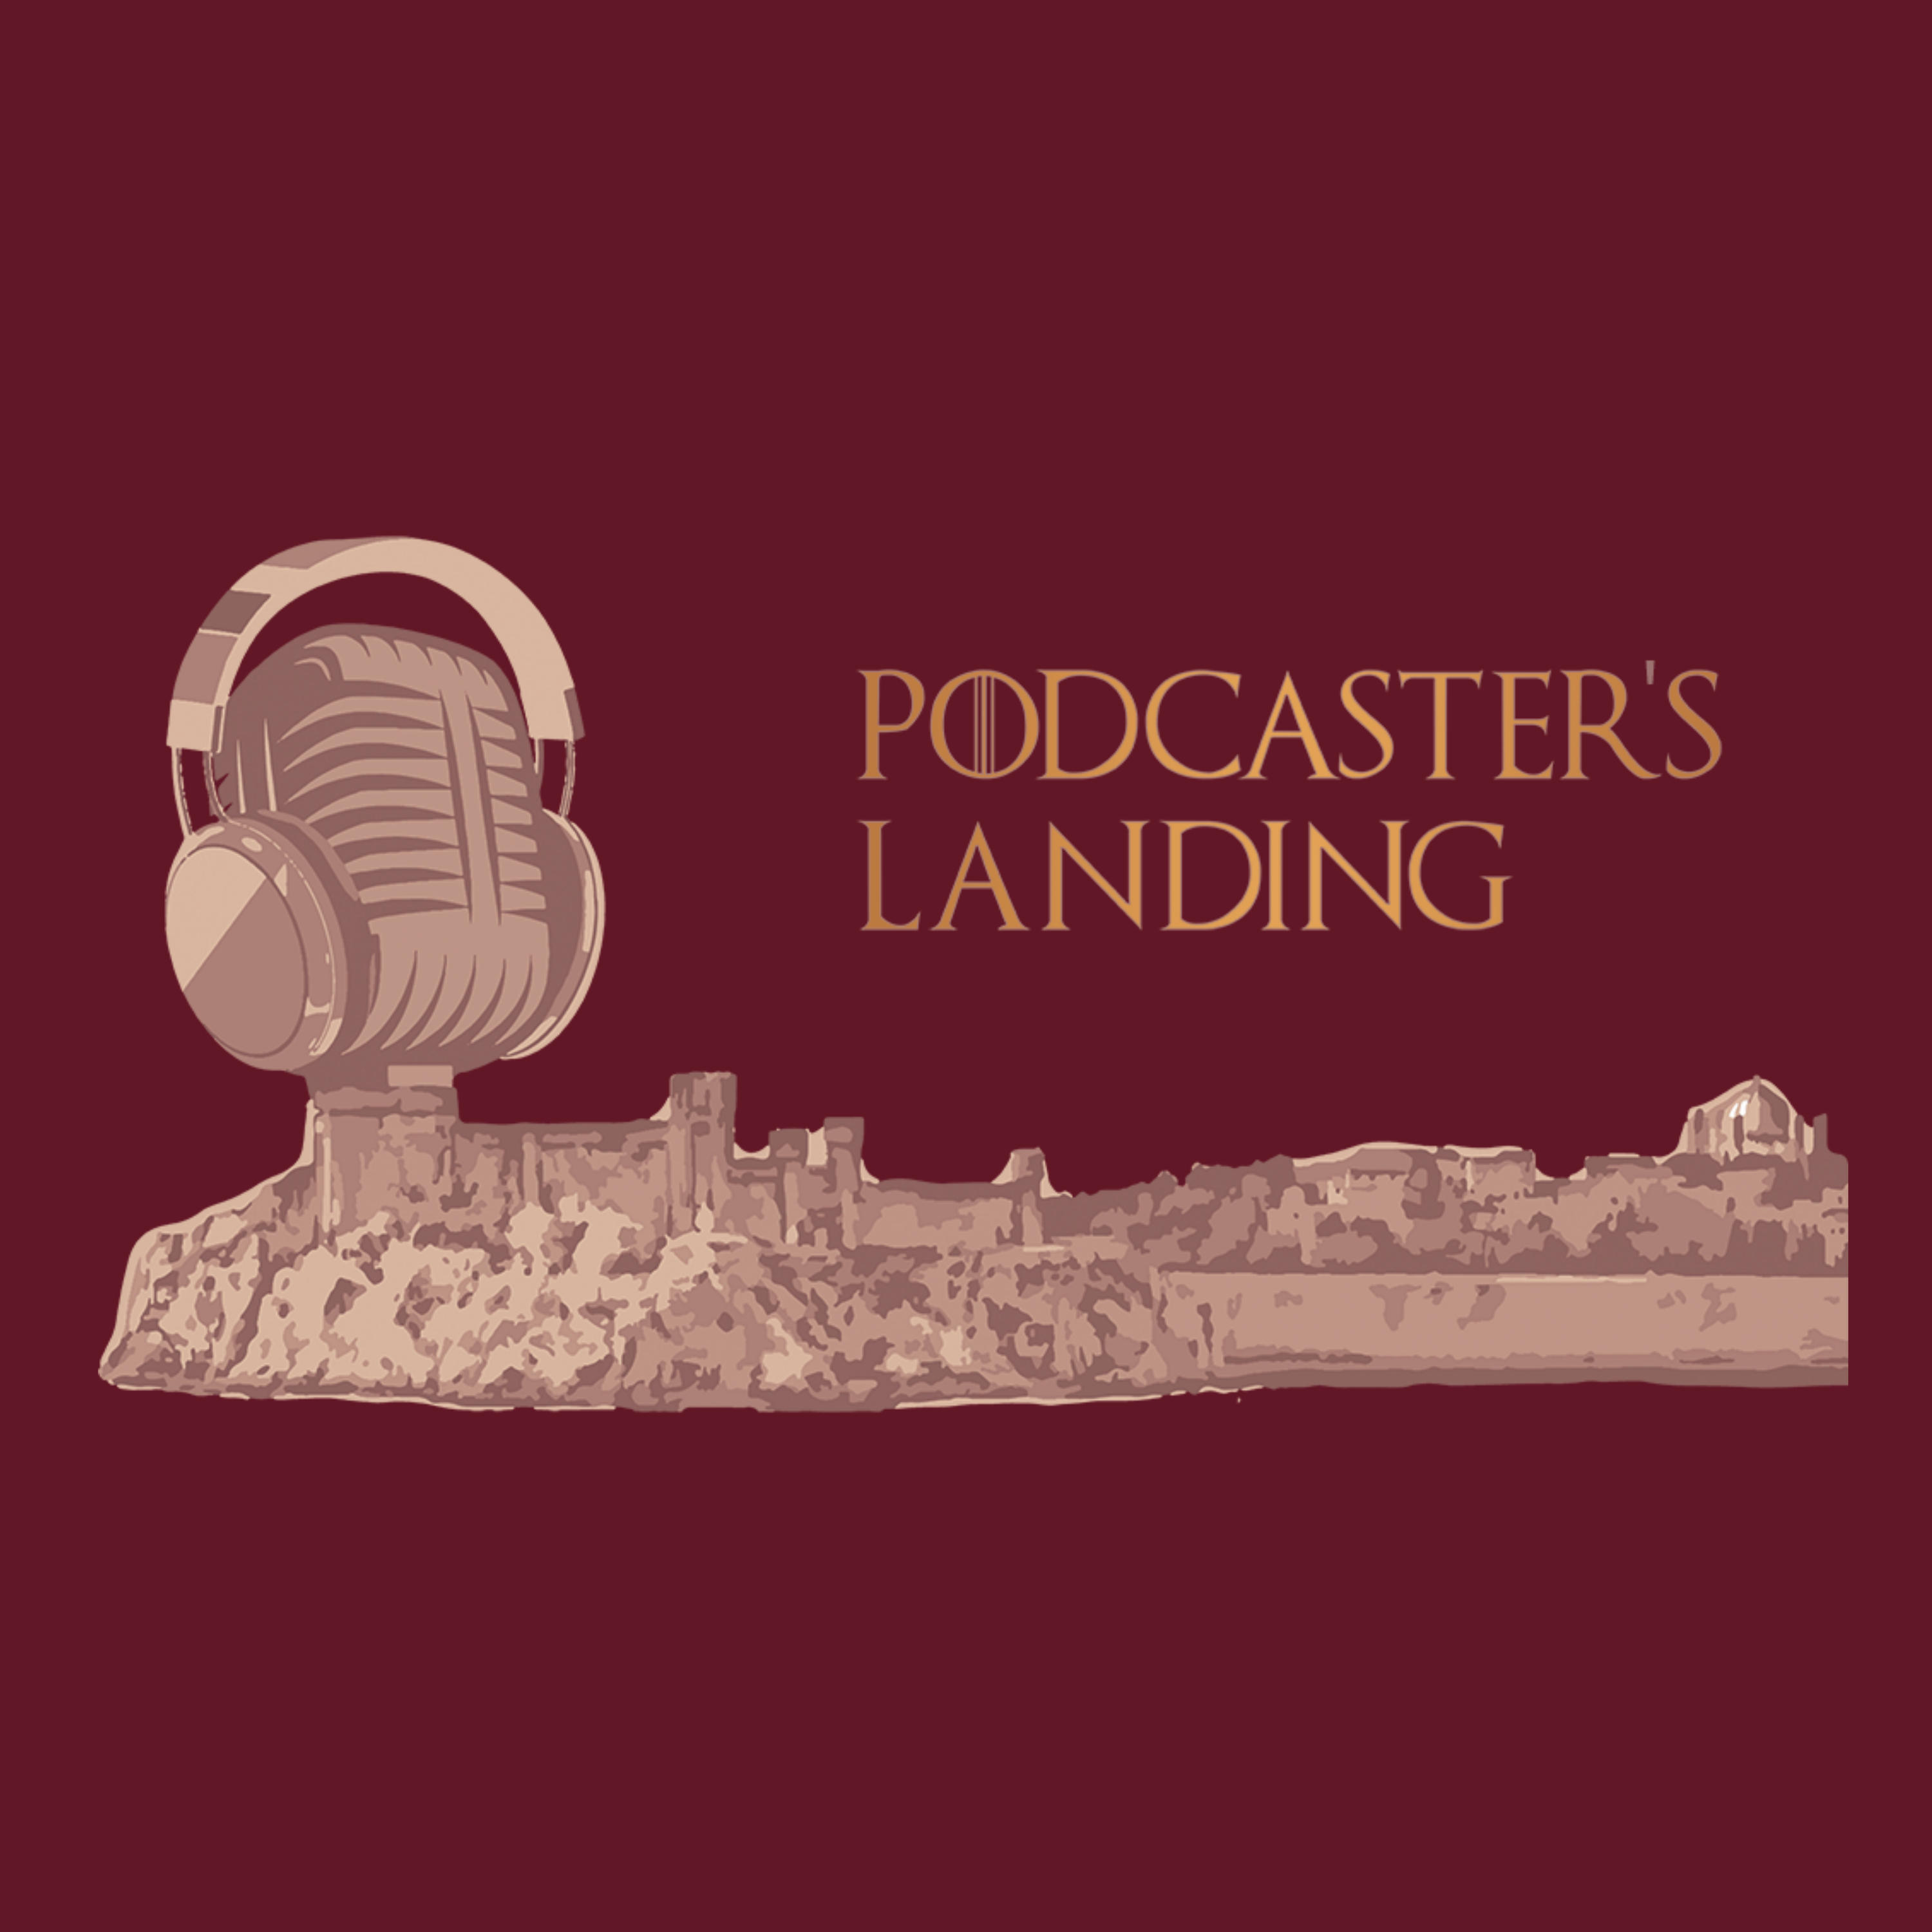 Podcaster's Landing